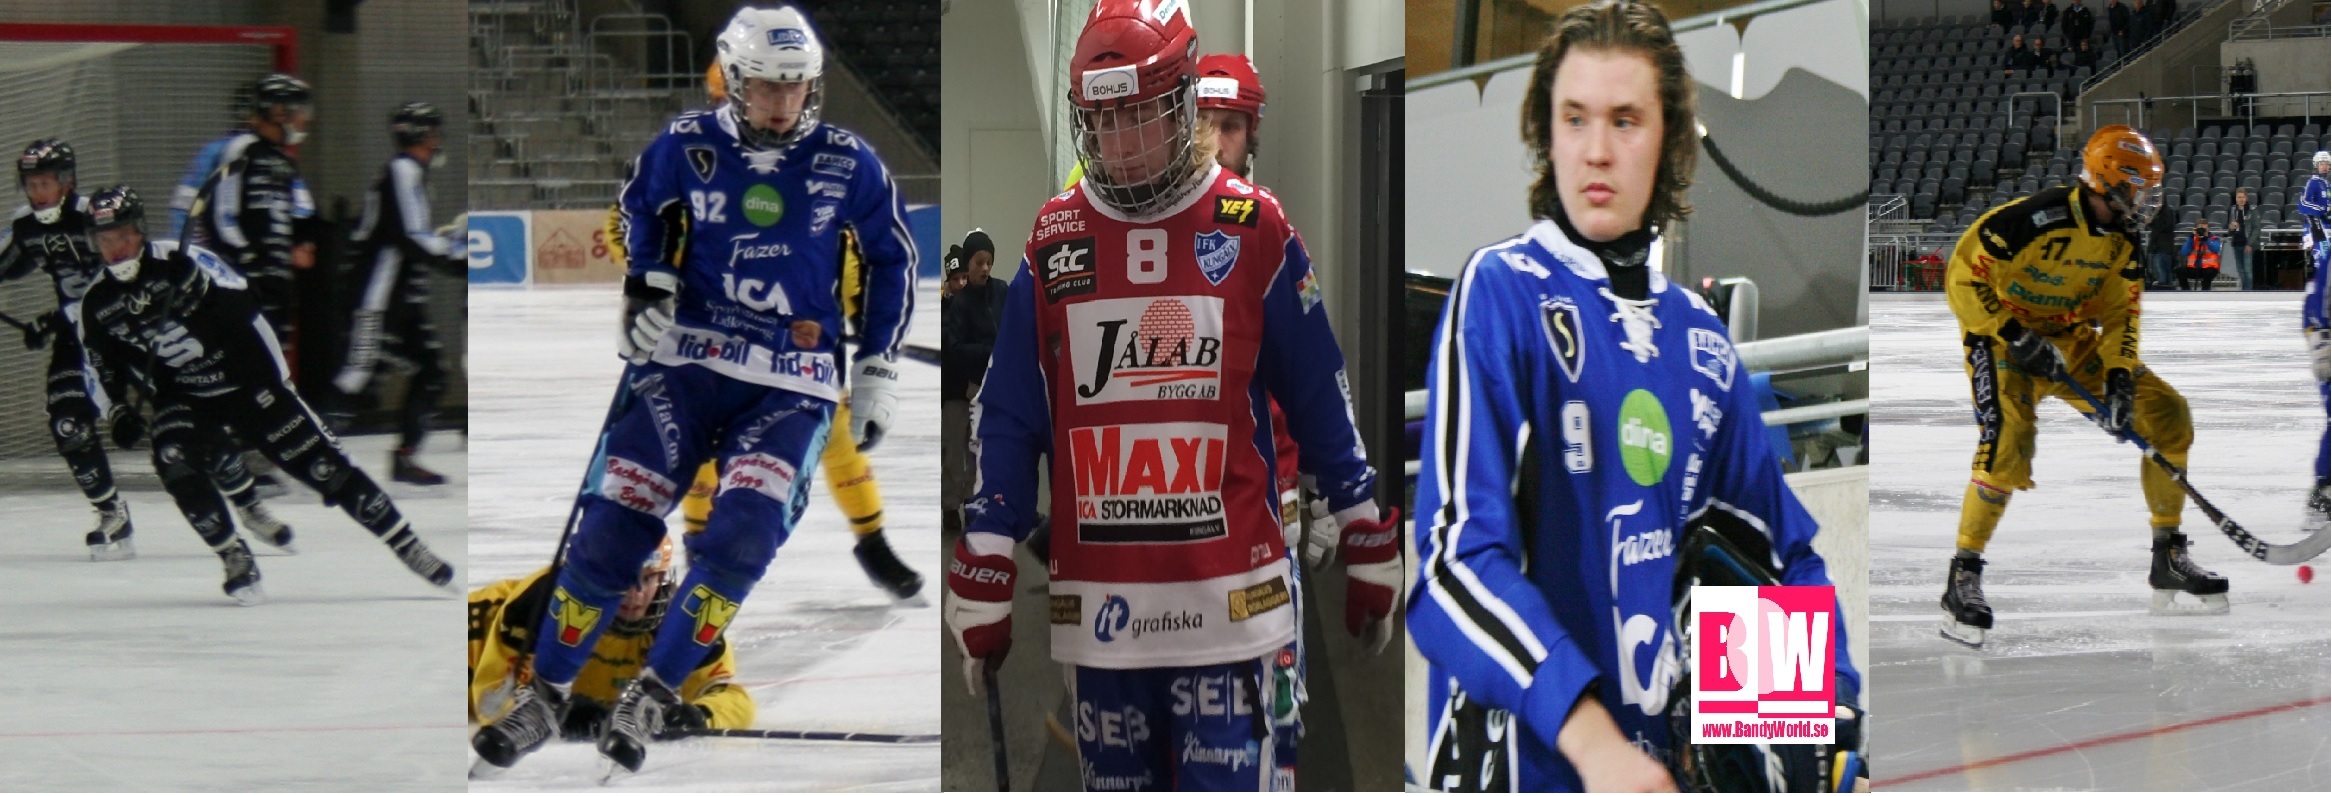 Här är de fem "Ynglingarna" som gjorde mål i premiären: 95 Erik Pettersson, 6 Martin Karlsson (92 på bilden), 8 Axel Ekholm, 86 Niklas Holopainen (9) 17 Filip Bringe